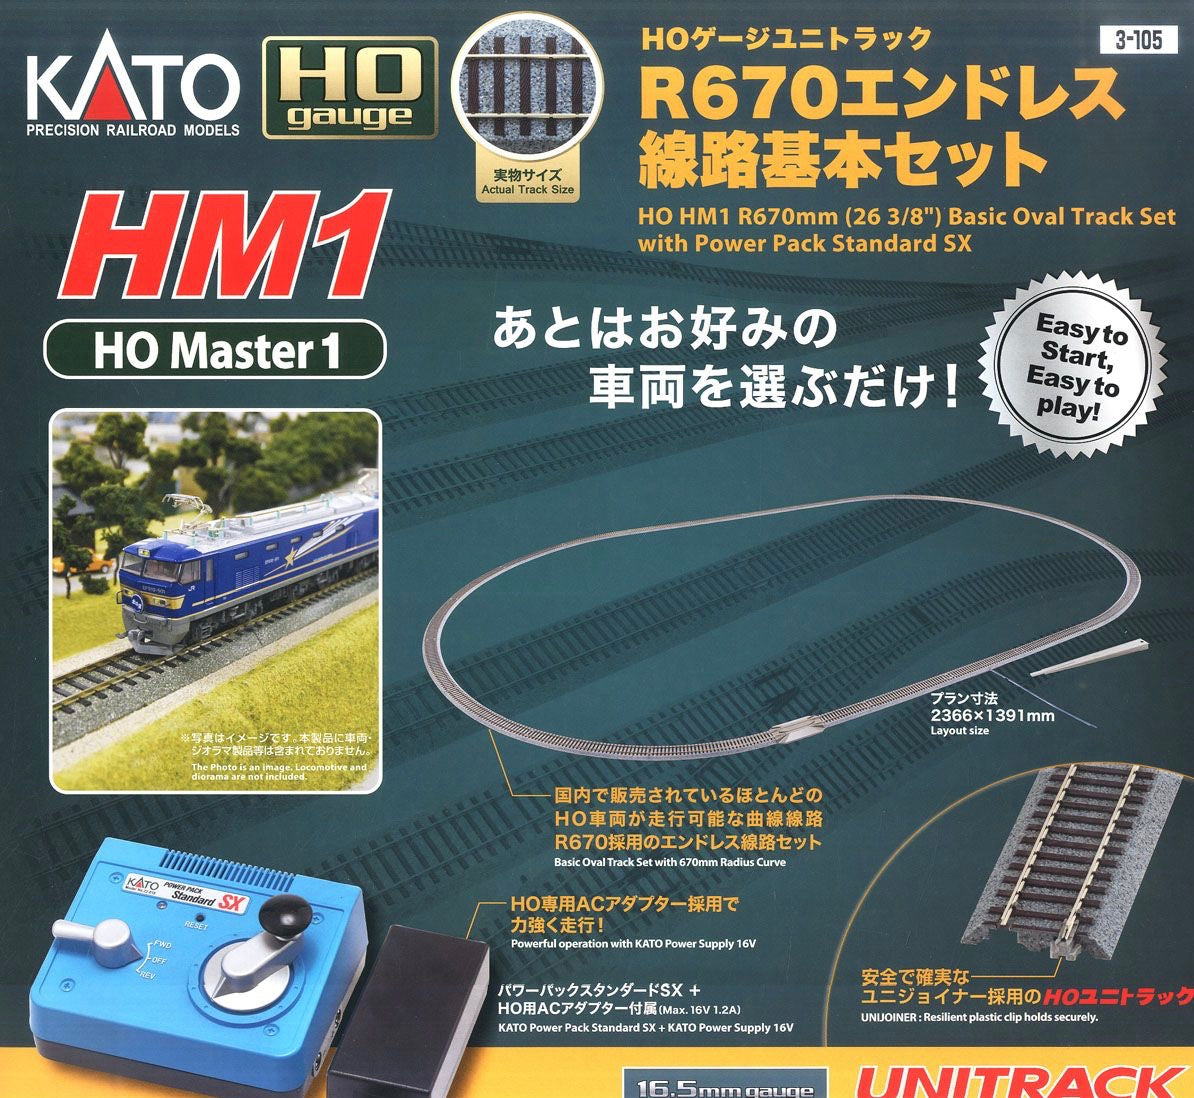 3-105 (HO) Unitrack [HM1] R670 Endless Track Set (HO Master1)